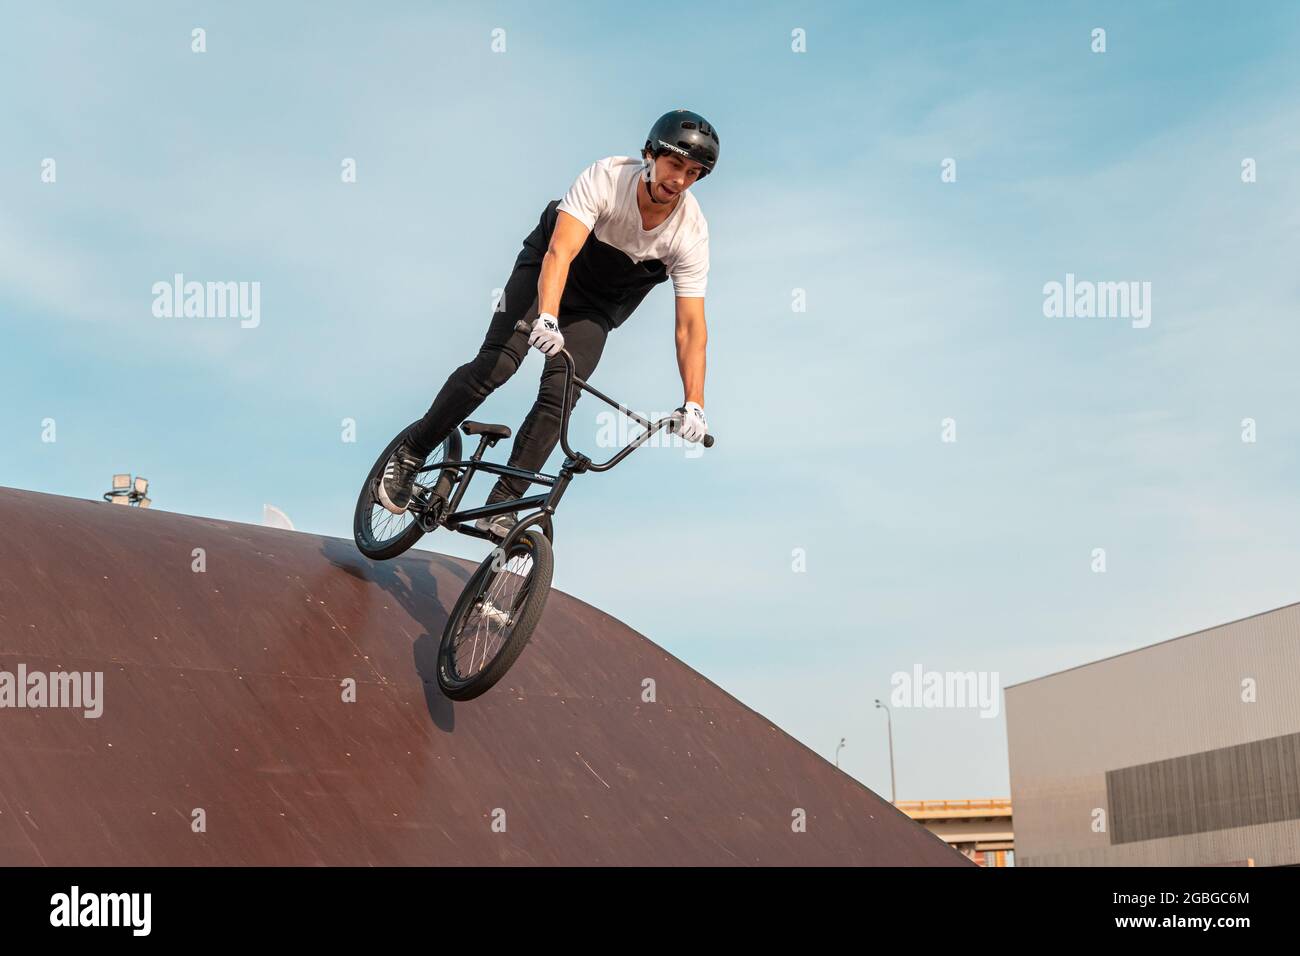 Kazan, Russland - 26. September 2020: Ein junger Fahrer macht Tricks auf einem BMX-Fahrrad. BMX Freestyle in einem Skatepark. Stockfoto